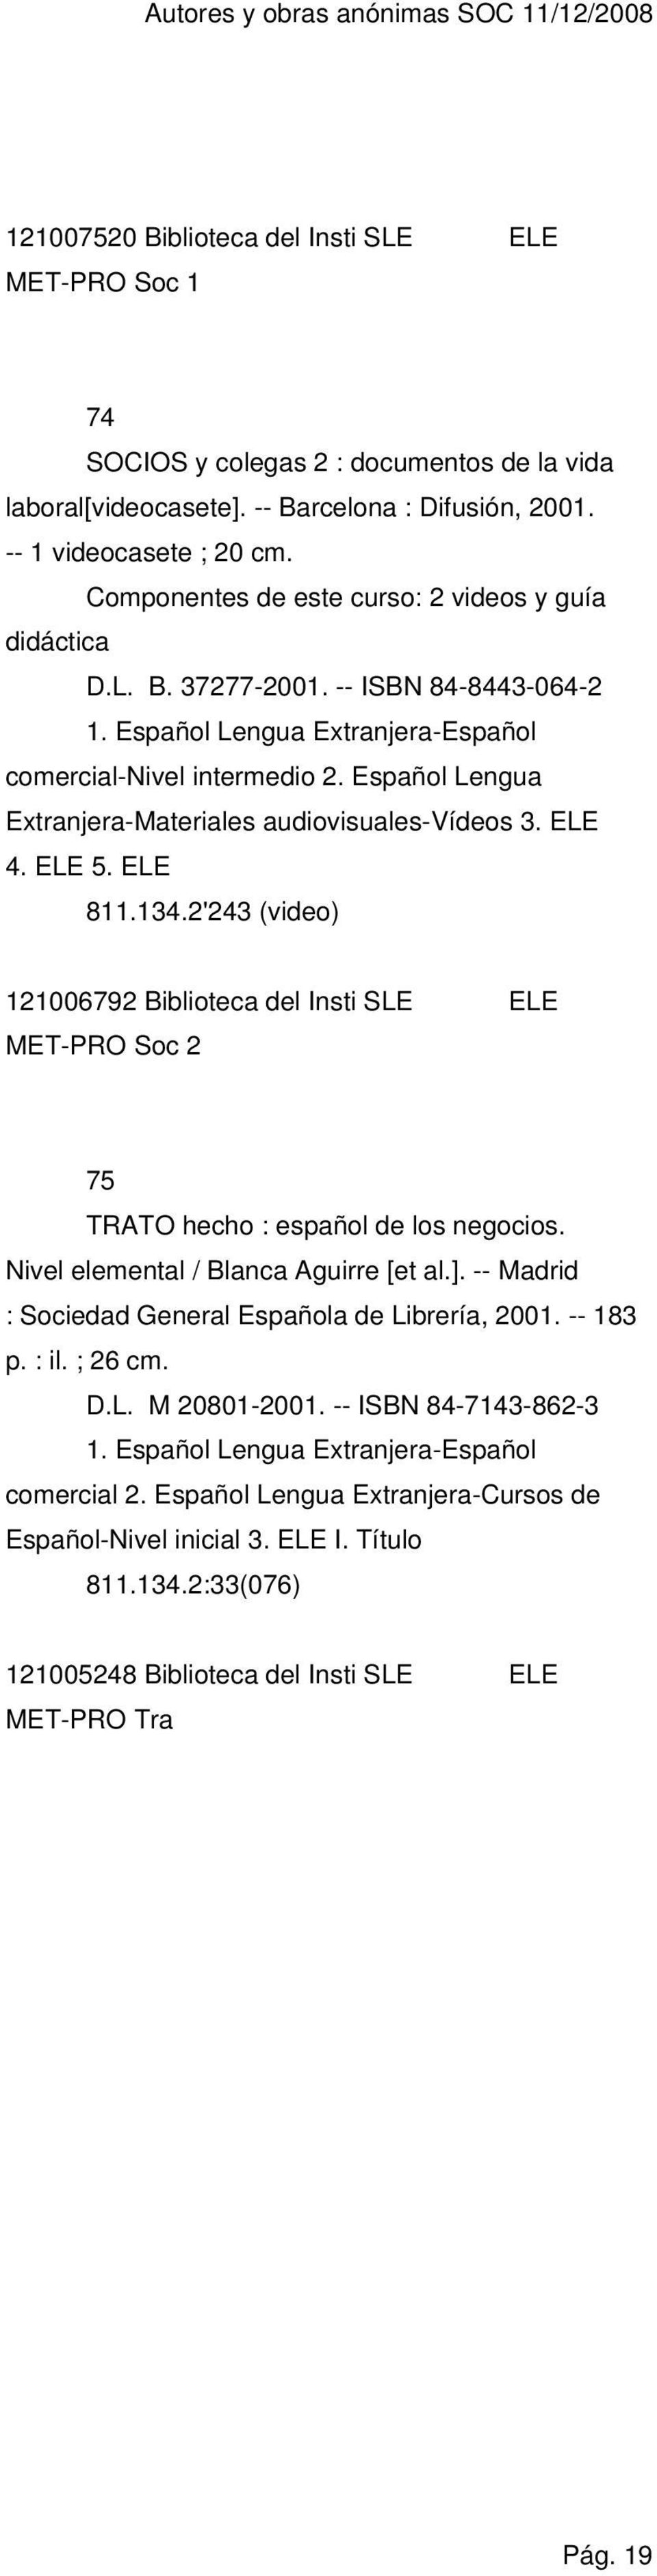 Español Lengua Extranjera-Materiales audiovisuales-vídeos 3. ELE 4. ELE 5. ELE 811.134.2'243 (video) 121006792 Biblioteca del Insti SLE ELE MET-PRO Soc 2 75 TRATO hecho : español de los negocios.